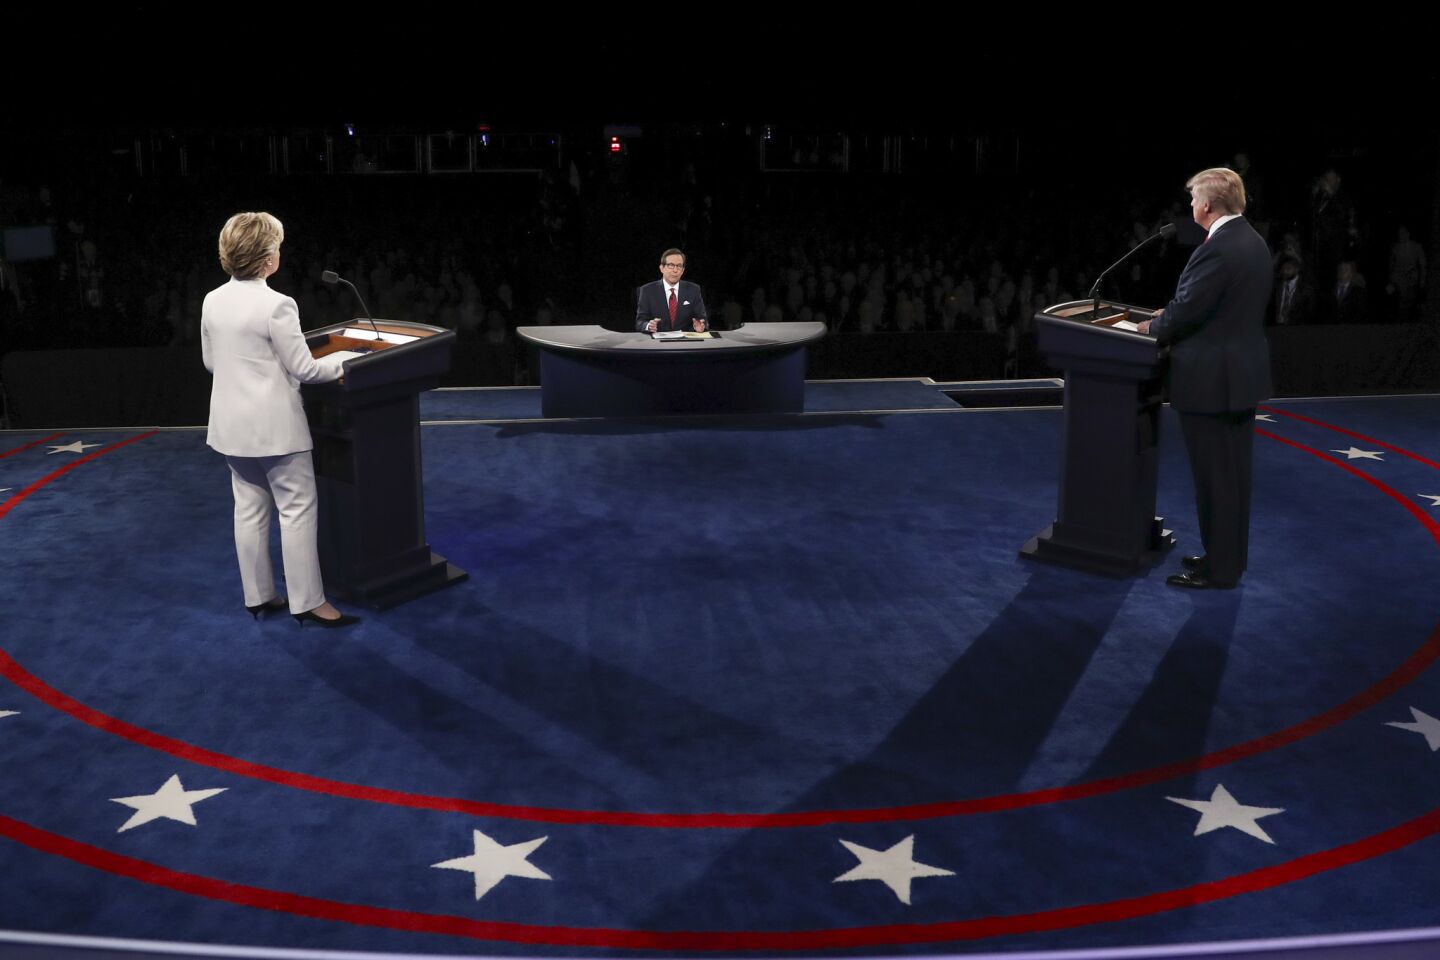 Presidential debate in Las Vegas